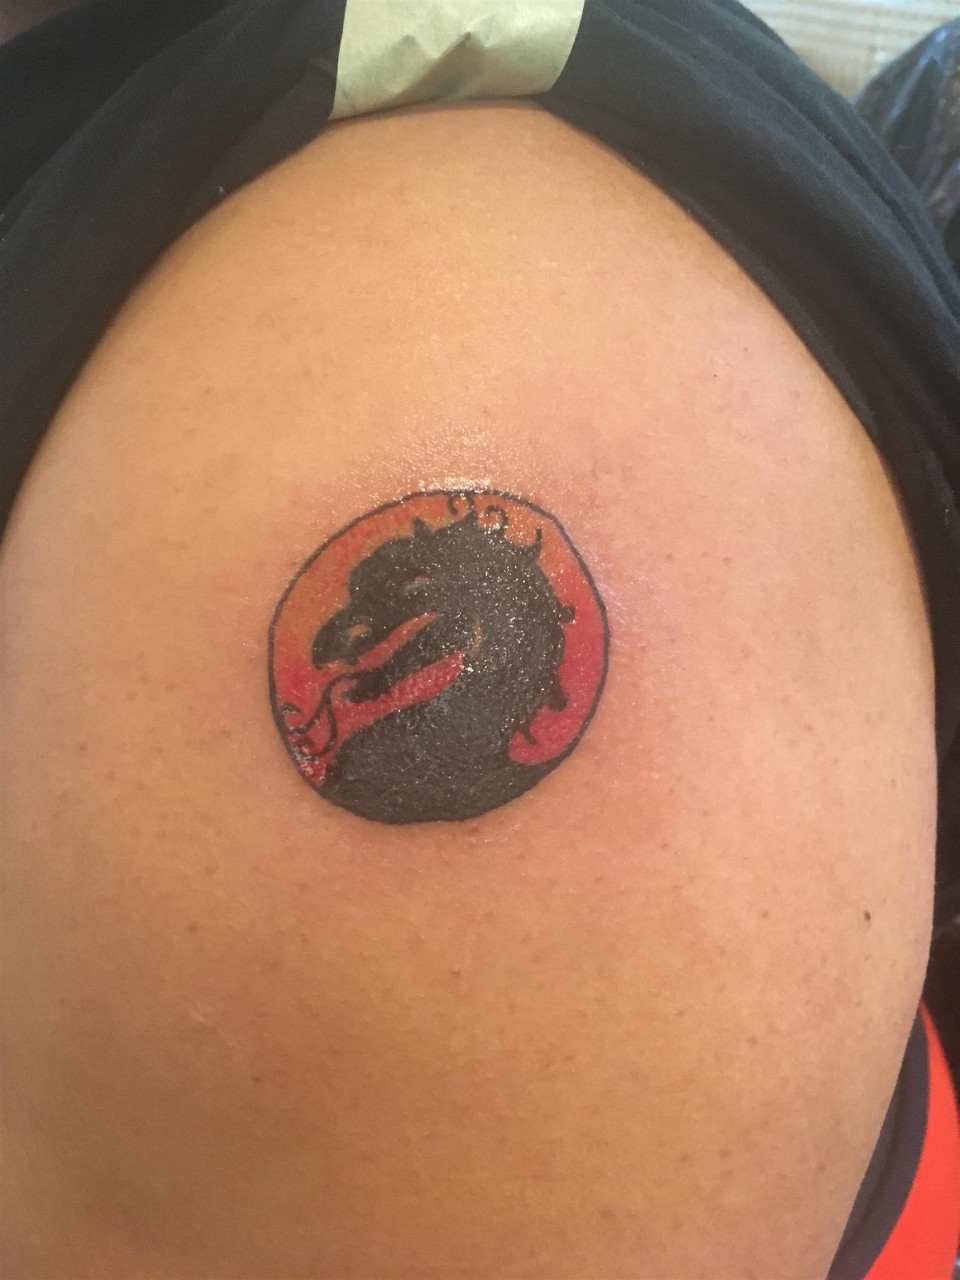 My new Scorpion Mortal Kombat Tattoo  rMortalKombat